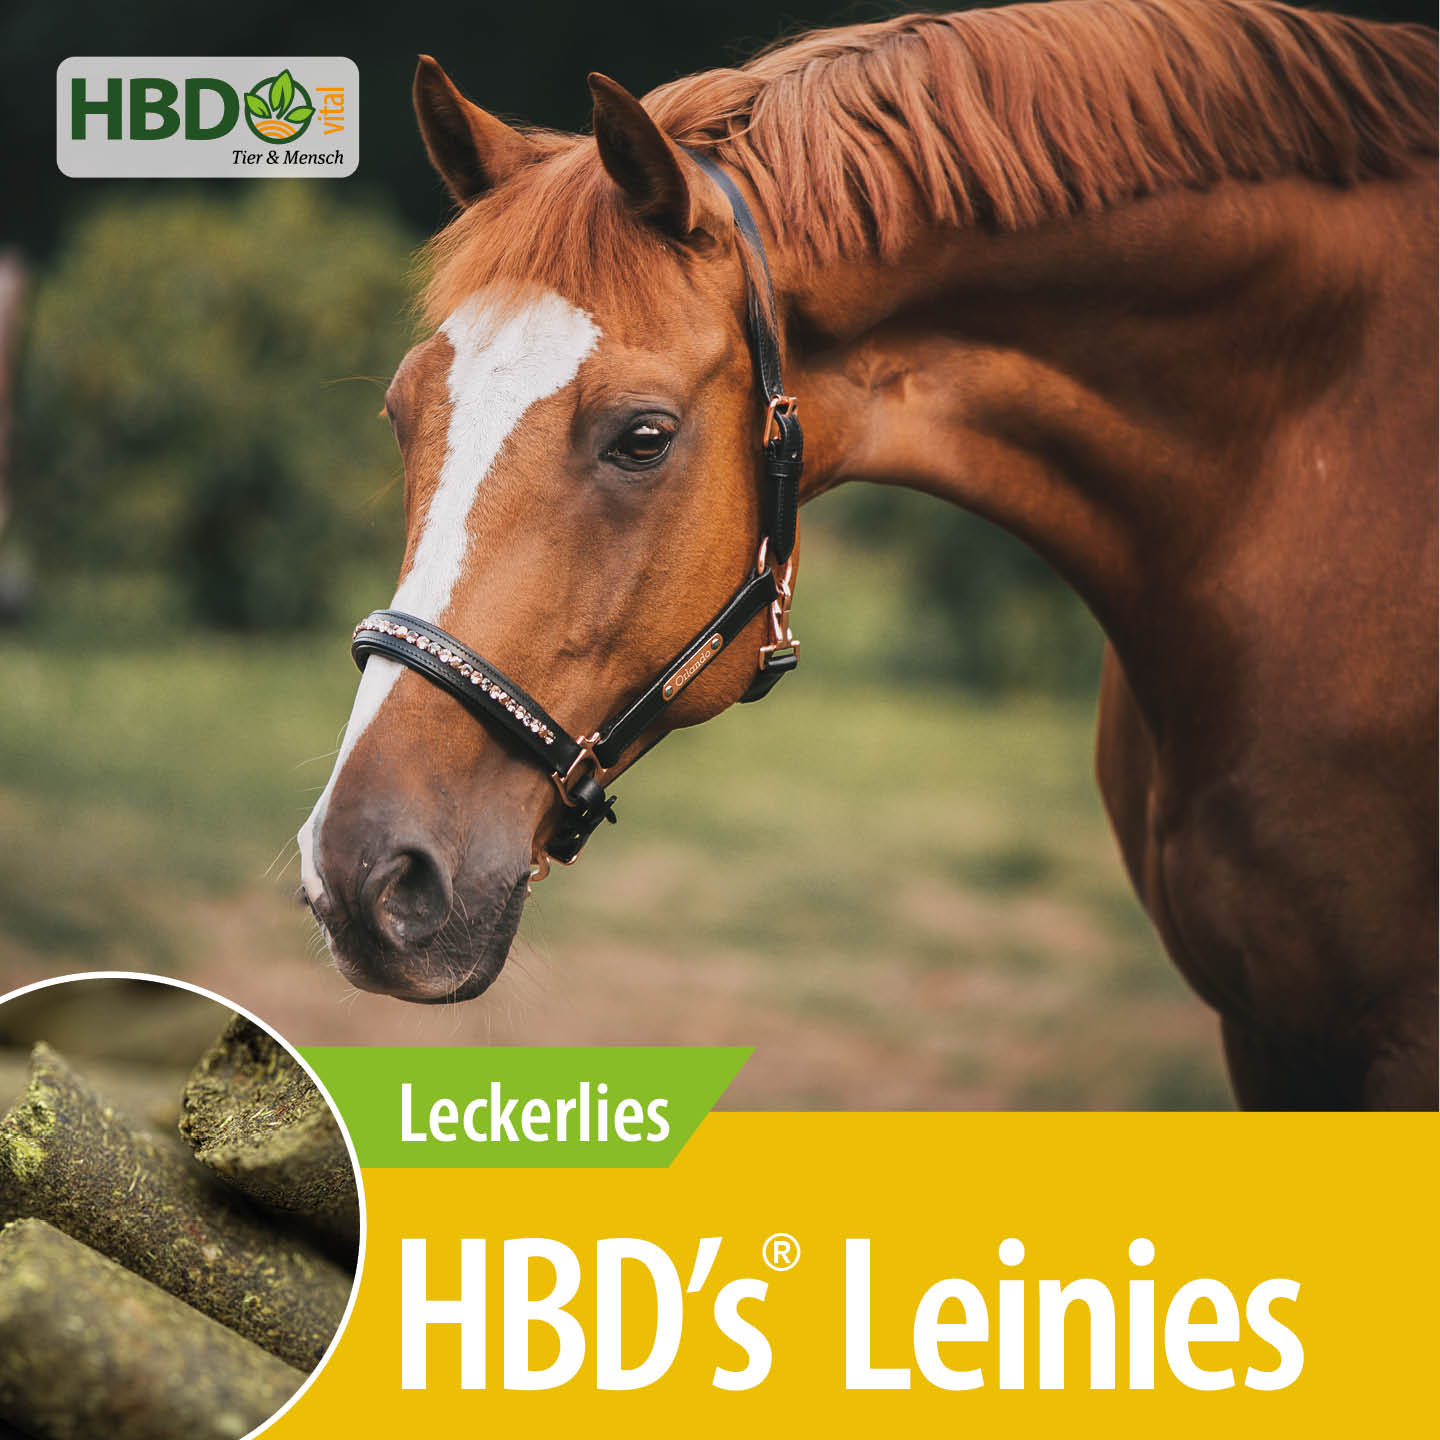 Shopbild für HBD’s Leinies Leckerlies für Pferde - Das Bild zeigt den Produktnamen sowie den Hinweis, dass es sich um Leckerlies handelt. Ein braunes Pferd mit Halfter ist zu sehen.